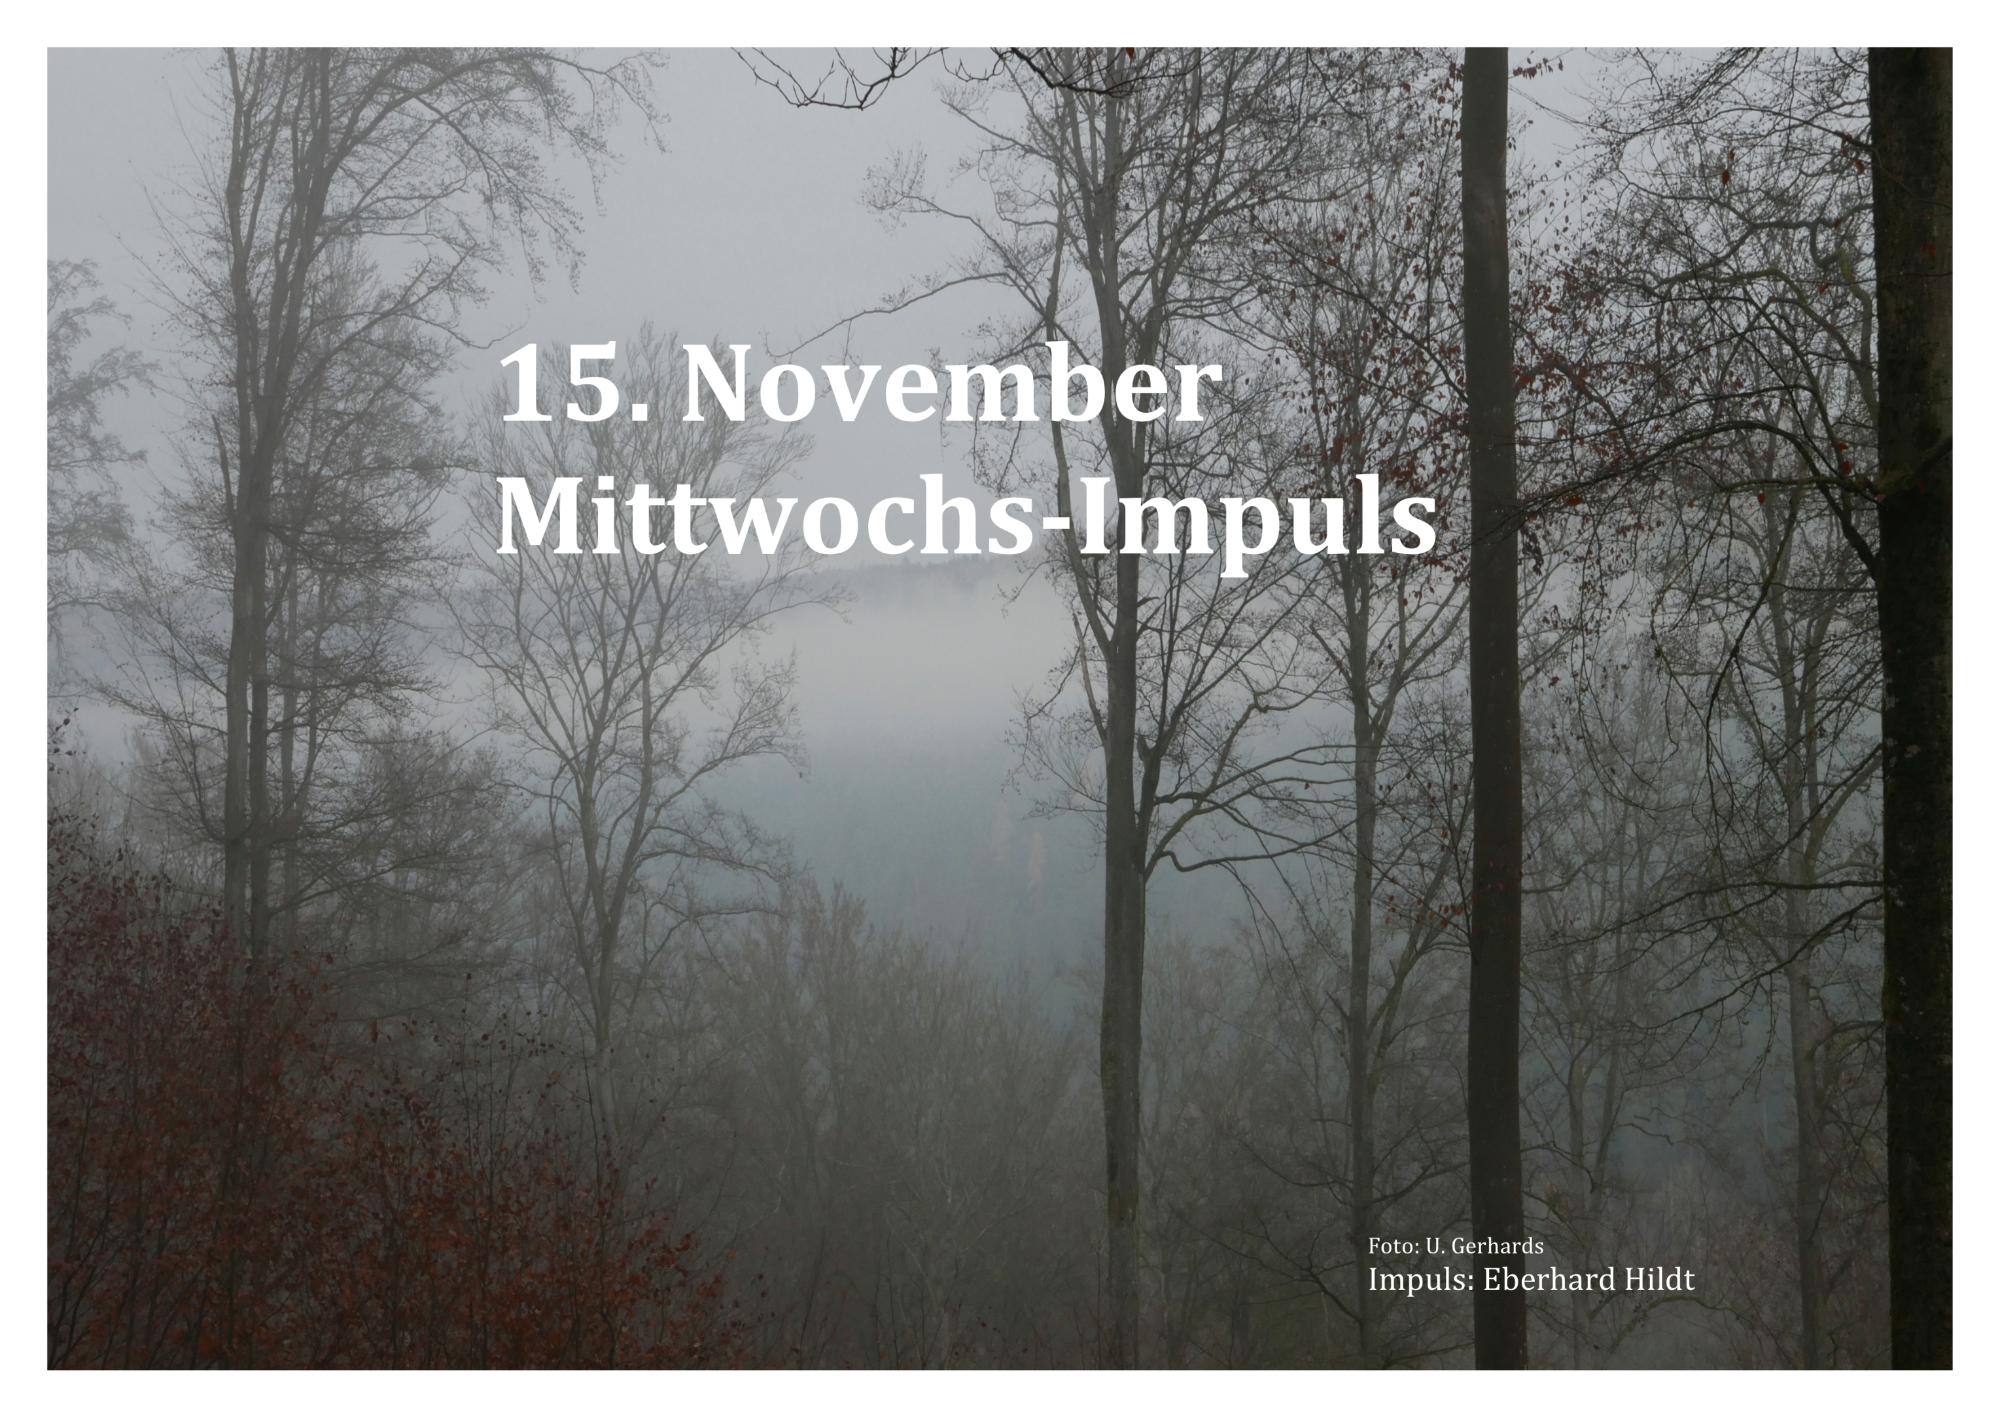 15.November, Mittwochs-Impuls